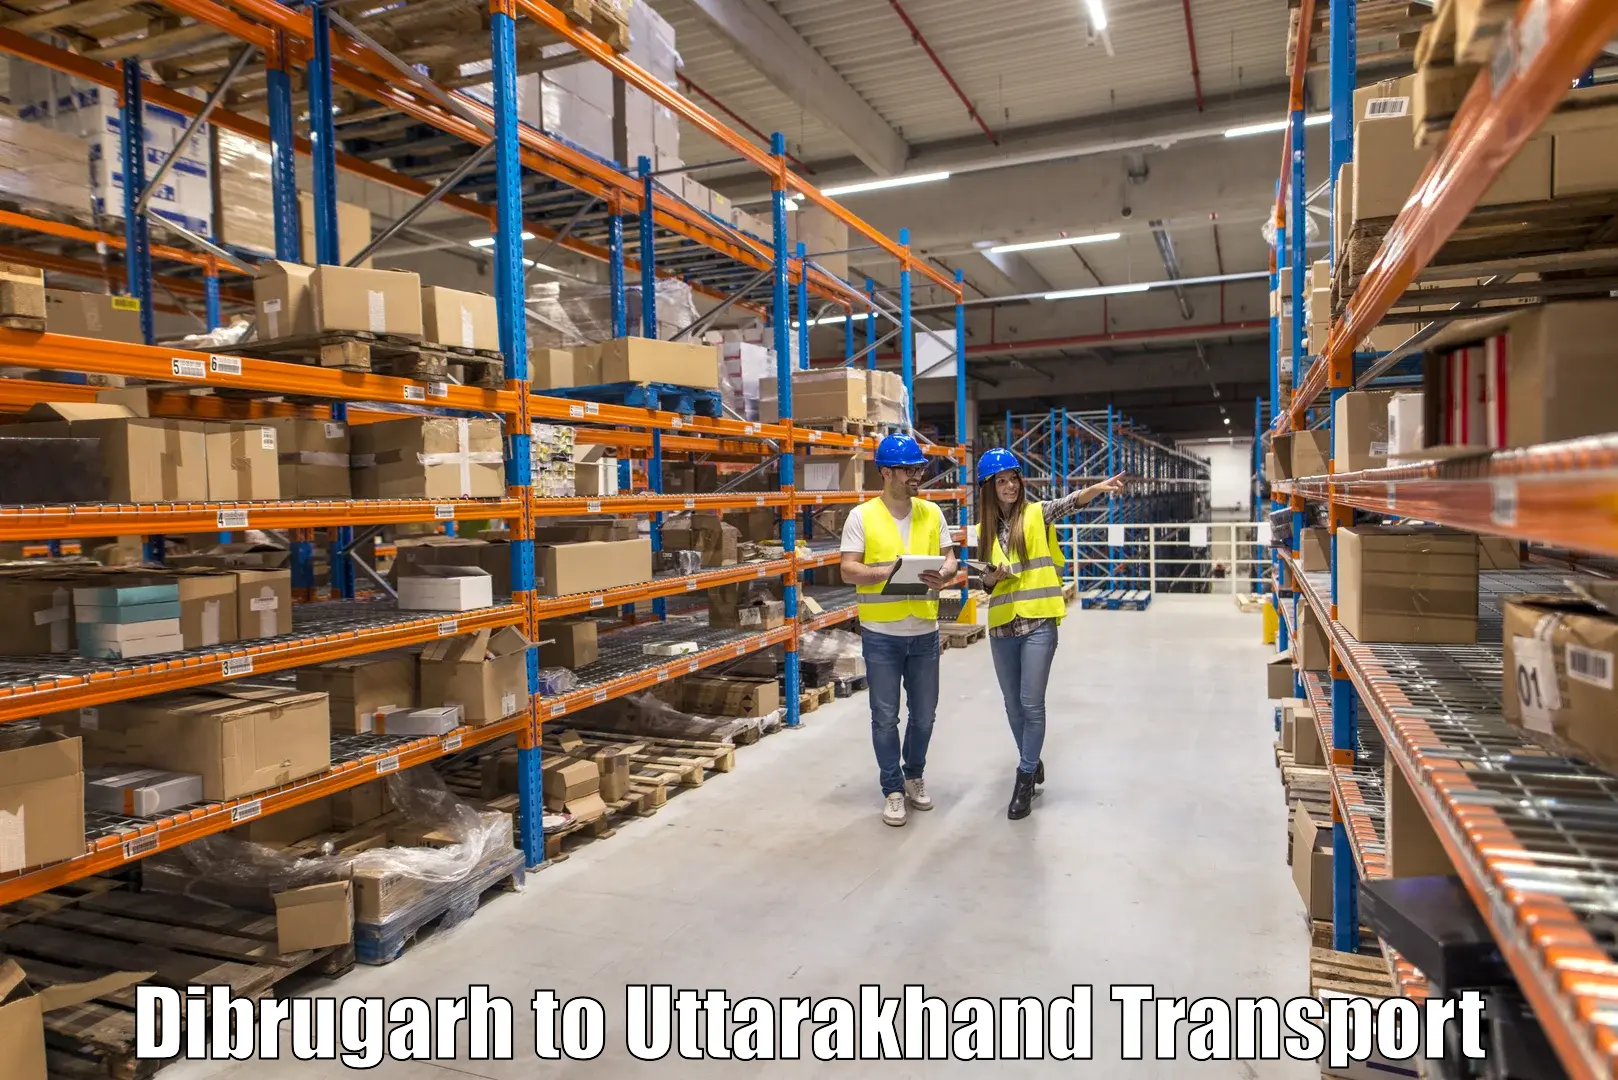 Truck transport companies in India Dibrugarh to Khatima